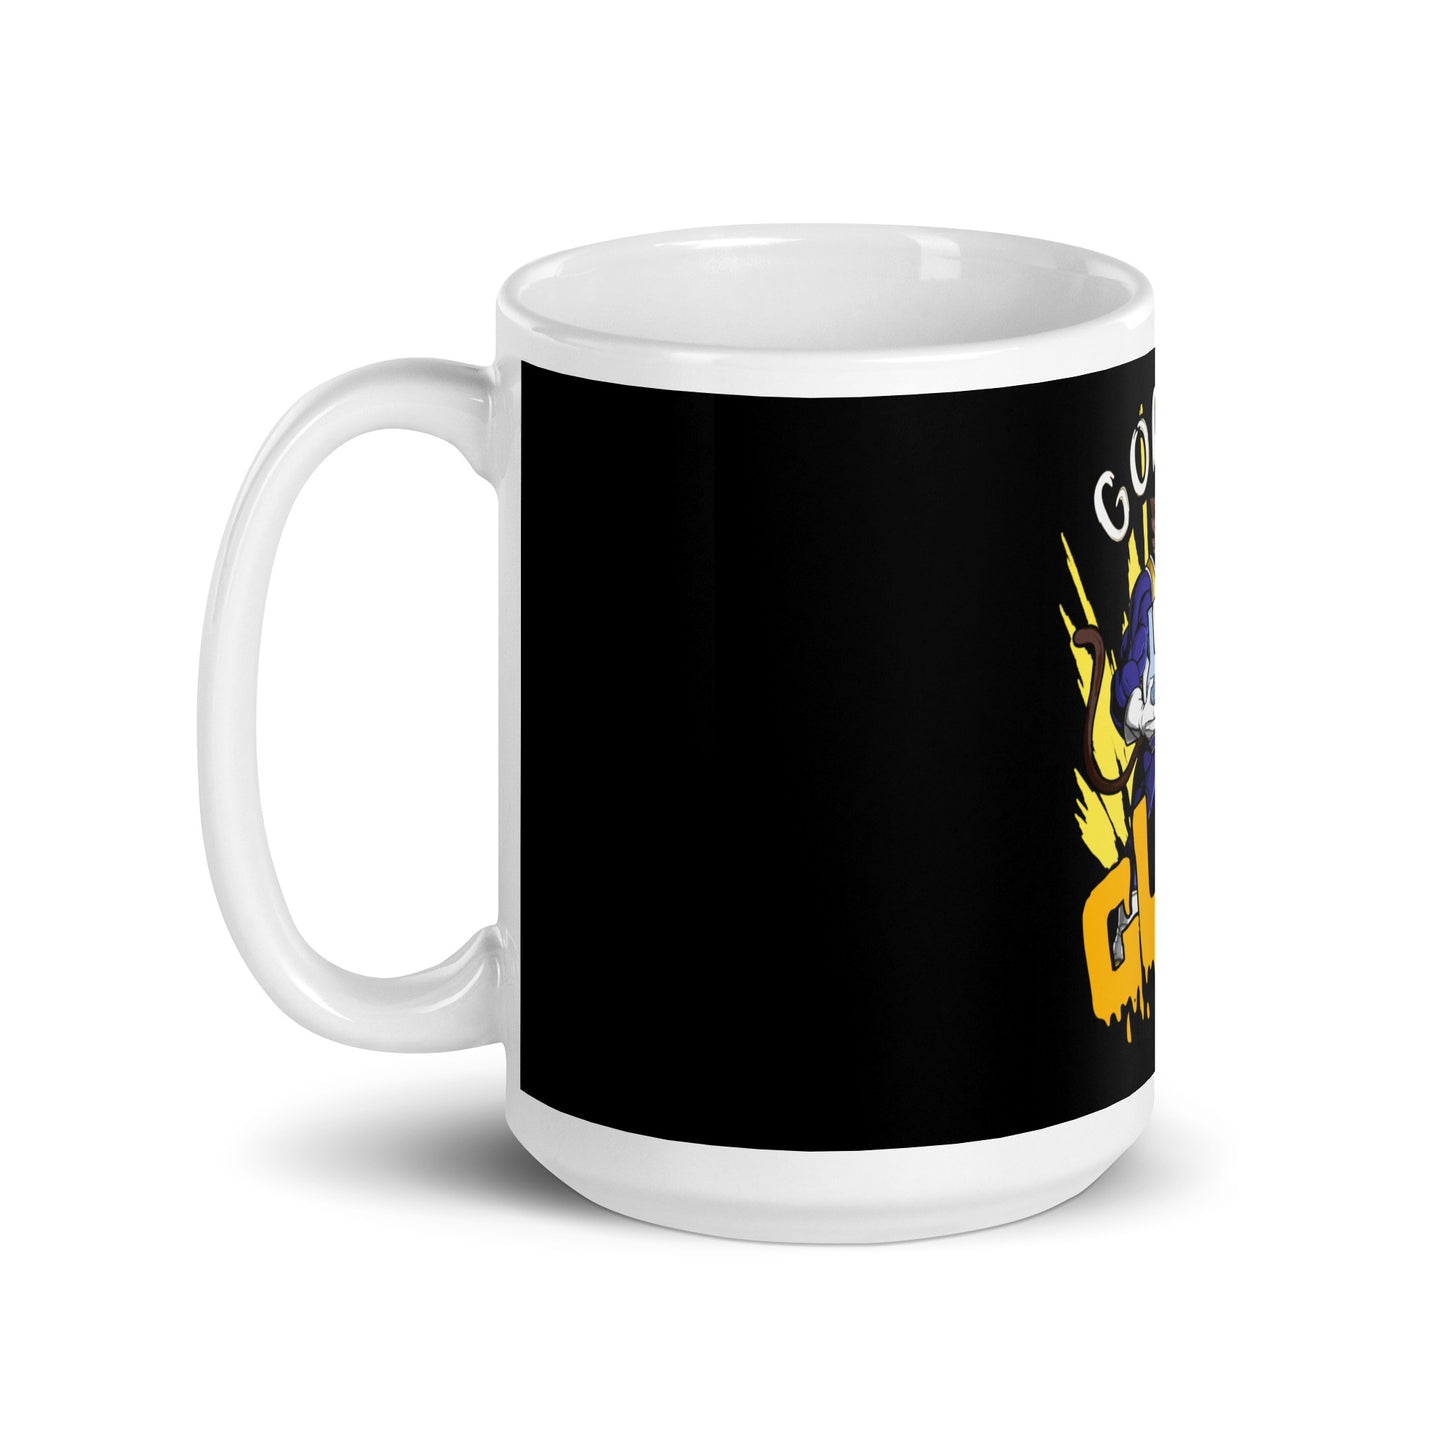 "Gorilla Glue DBZ" mug